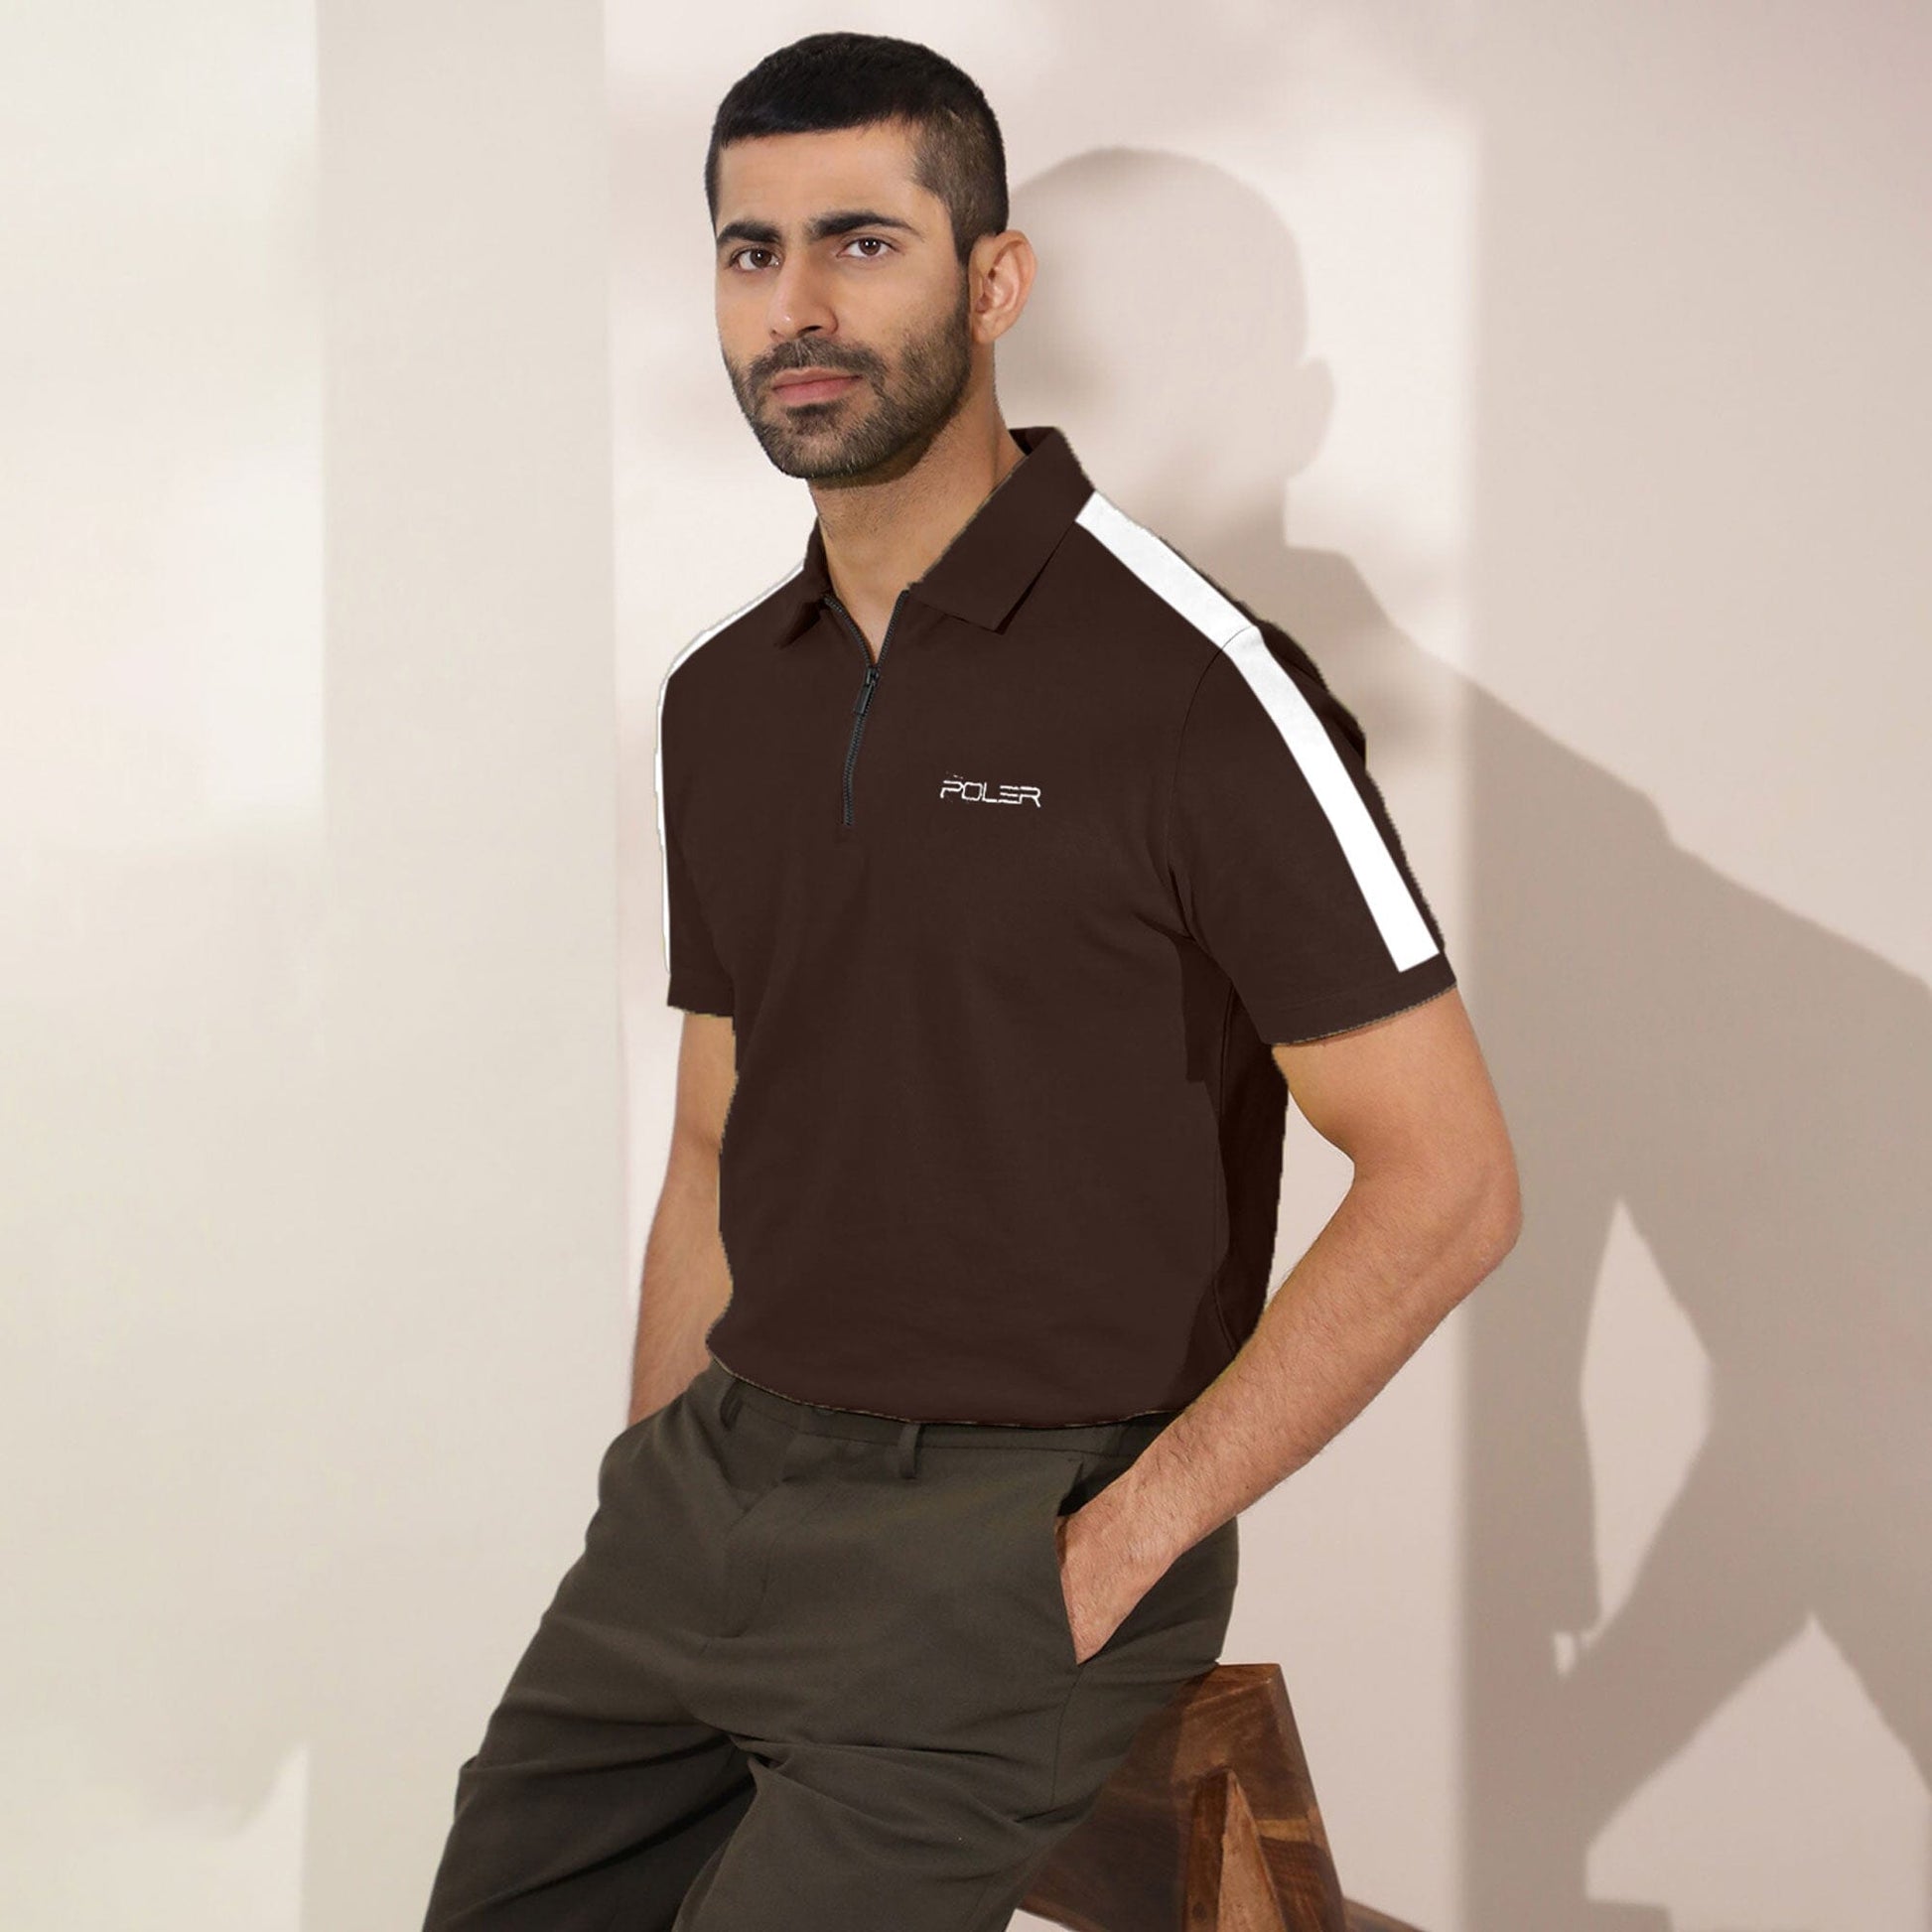 Poler Men's Quarter Zipper Poler Embroidered Polo Shirt Men's Polo Shirt IBT Chocolate S 